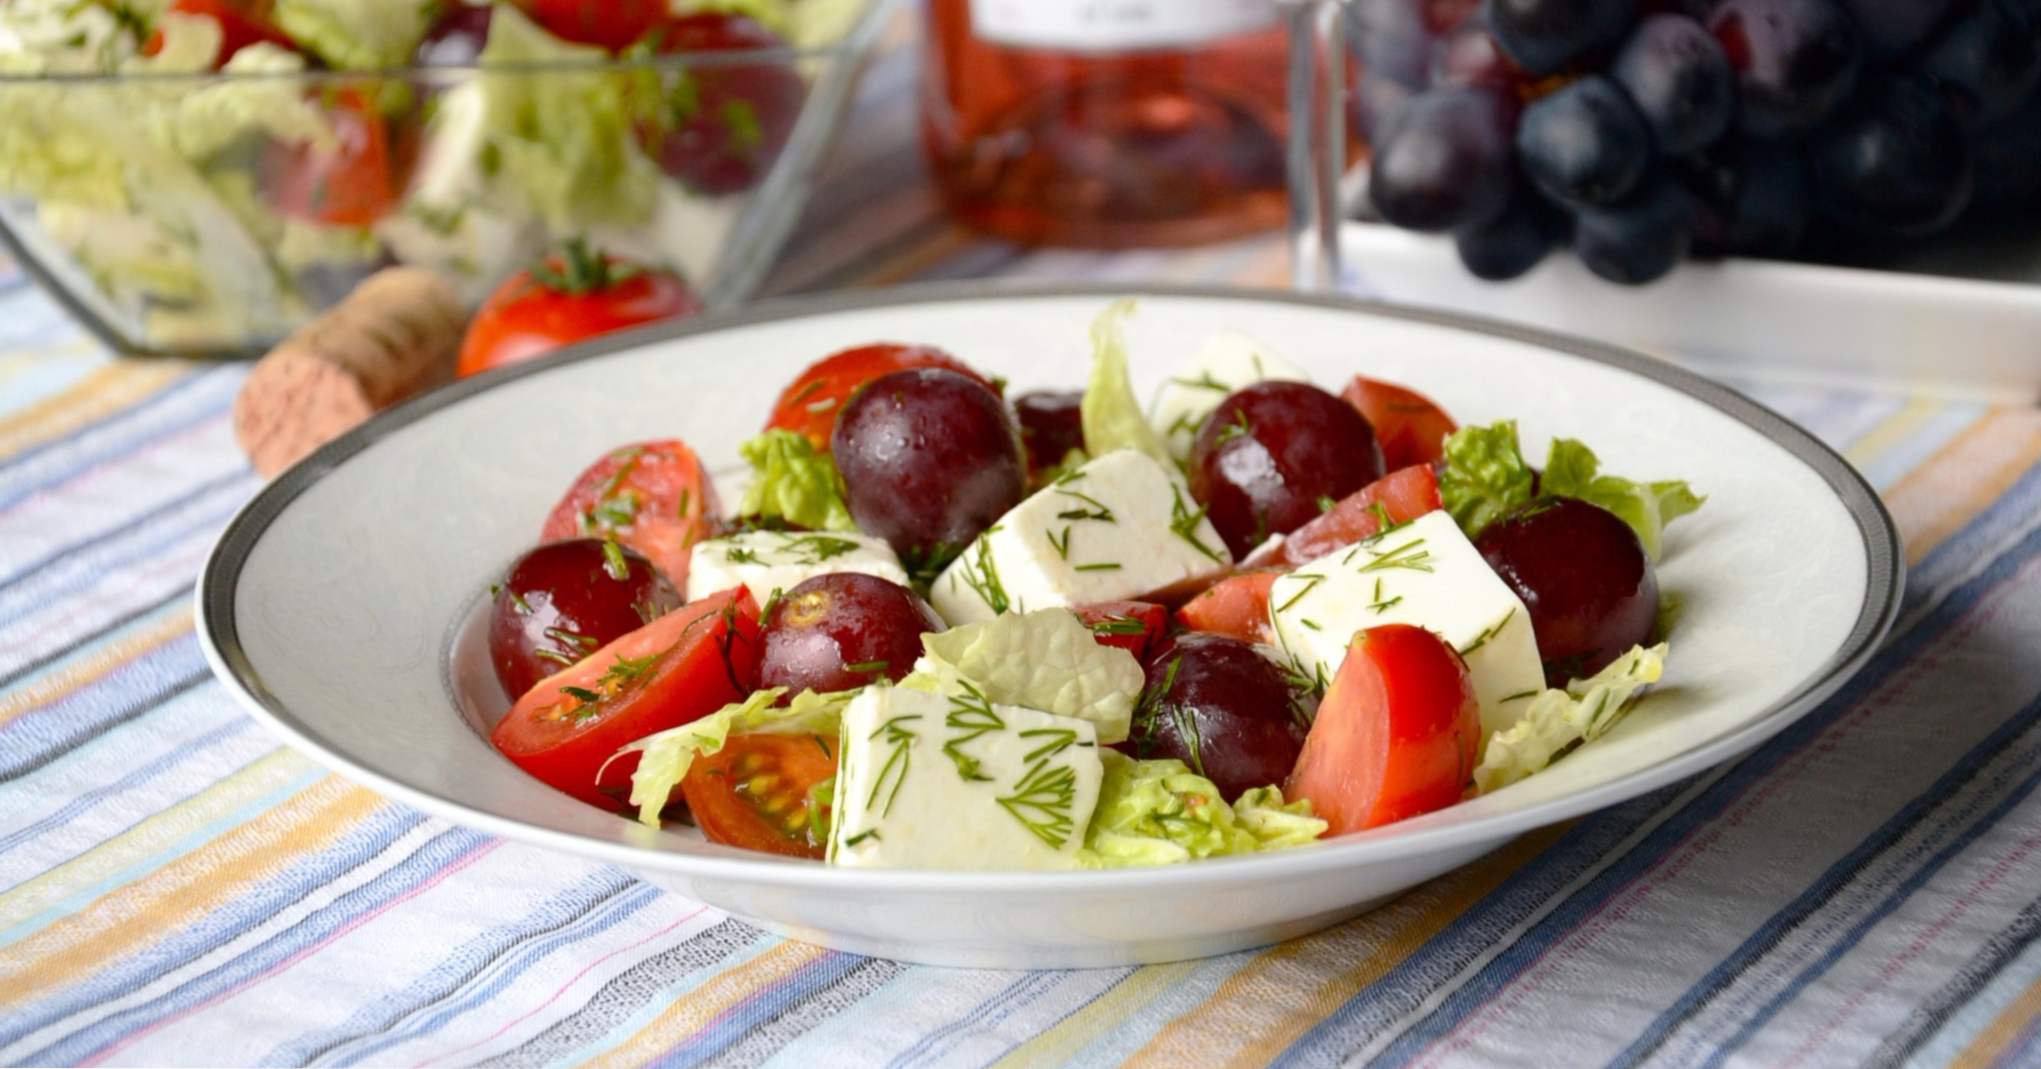 Salata s grožđem - 8 ukusnih recepata za kuhanje